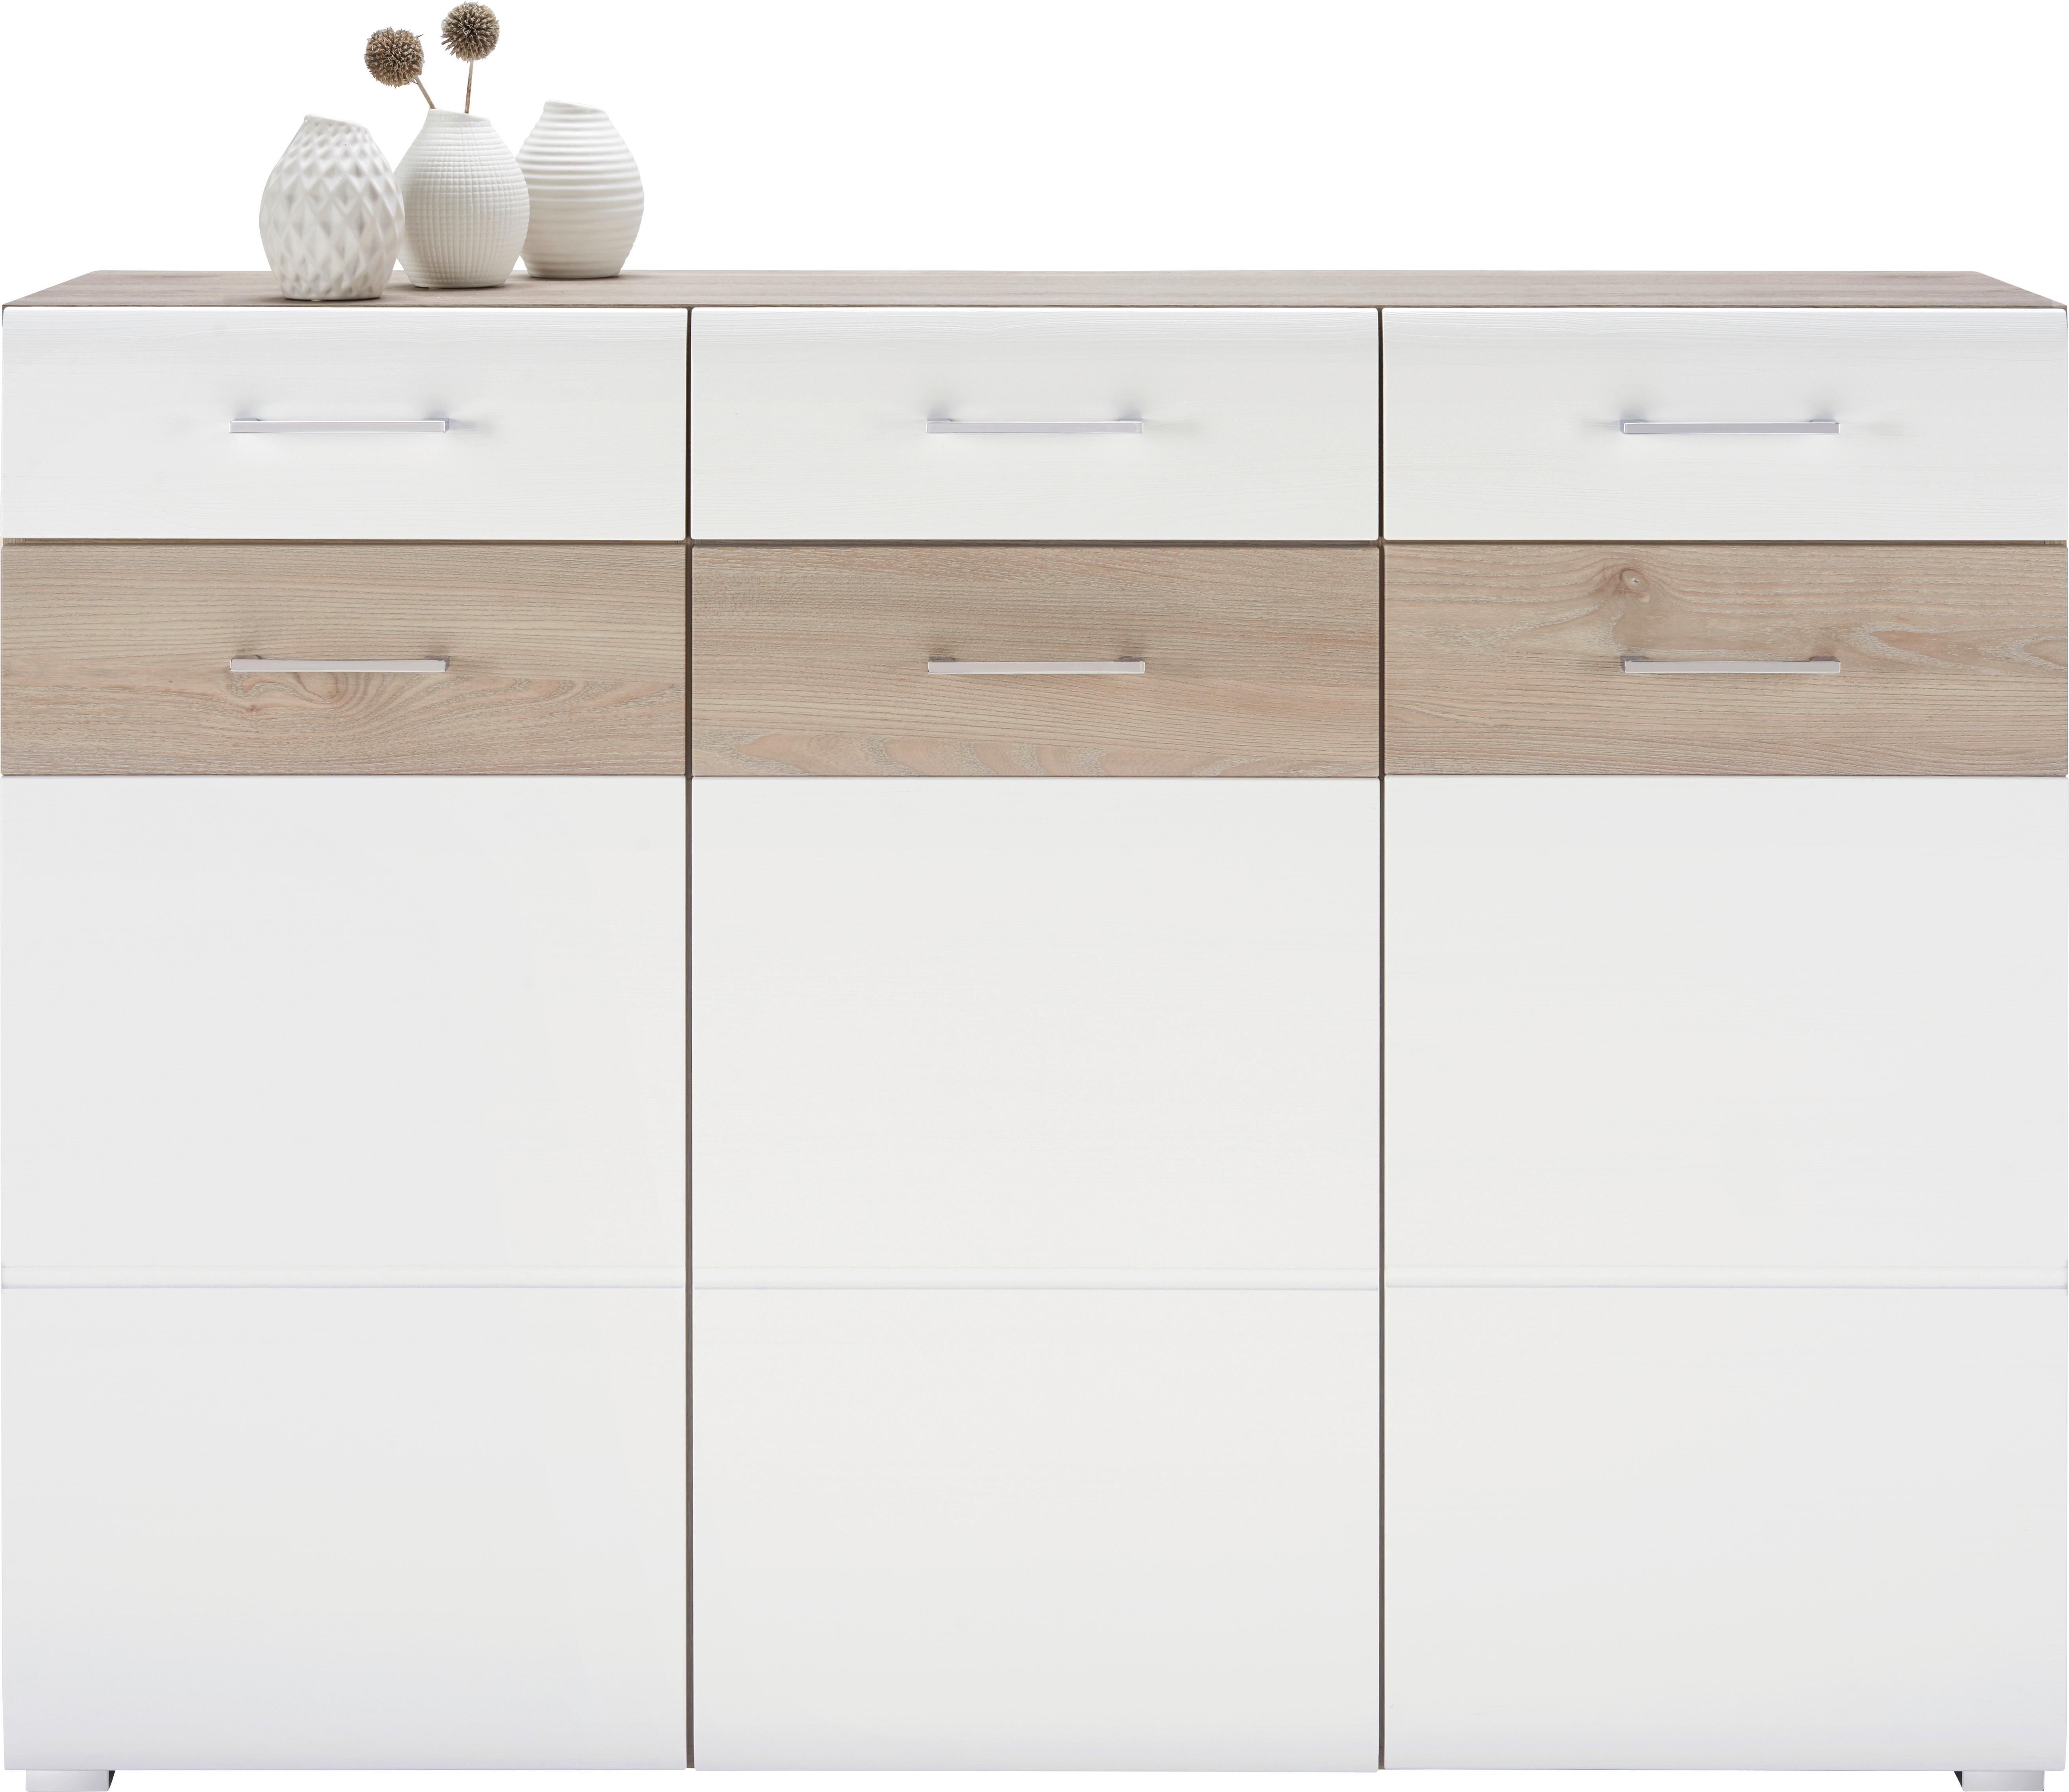 Sideboard in Weiß/Silbereichenfarben - Chromfarben/Silberfarben, MODERN, Holzwerkstoff/Metall (144/104/40cm) - Modern Living